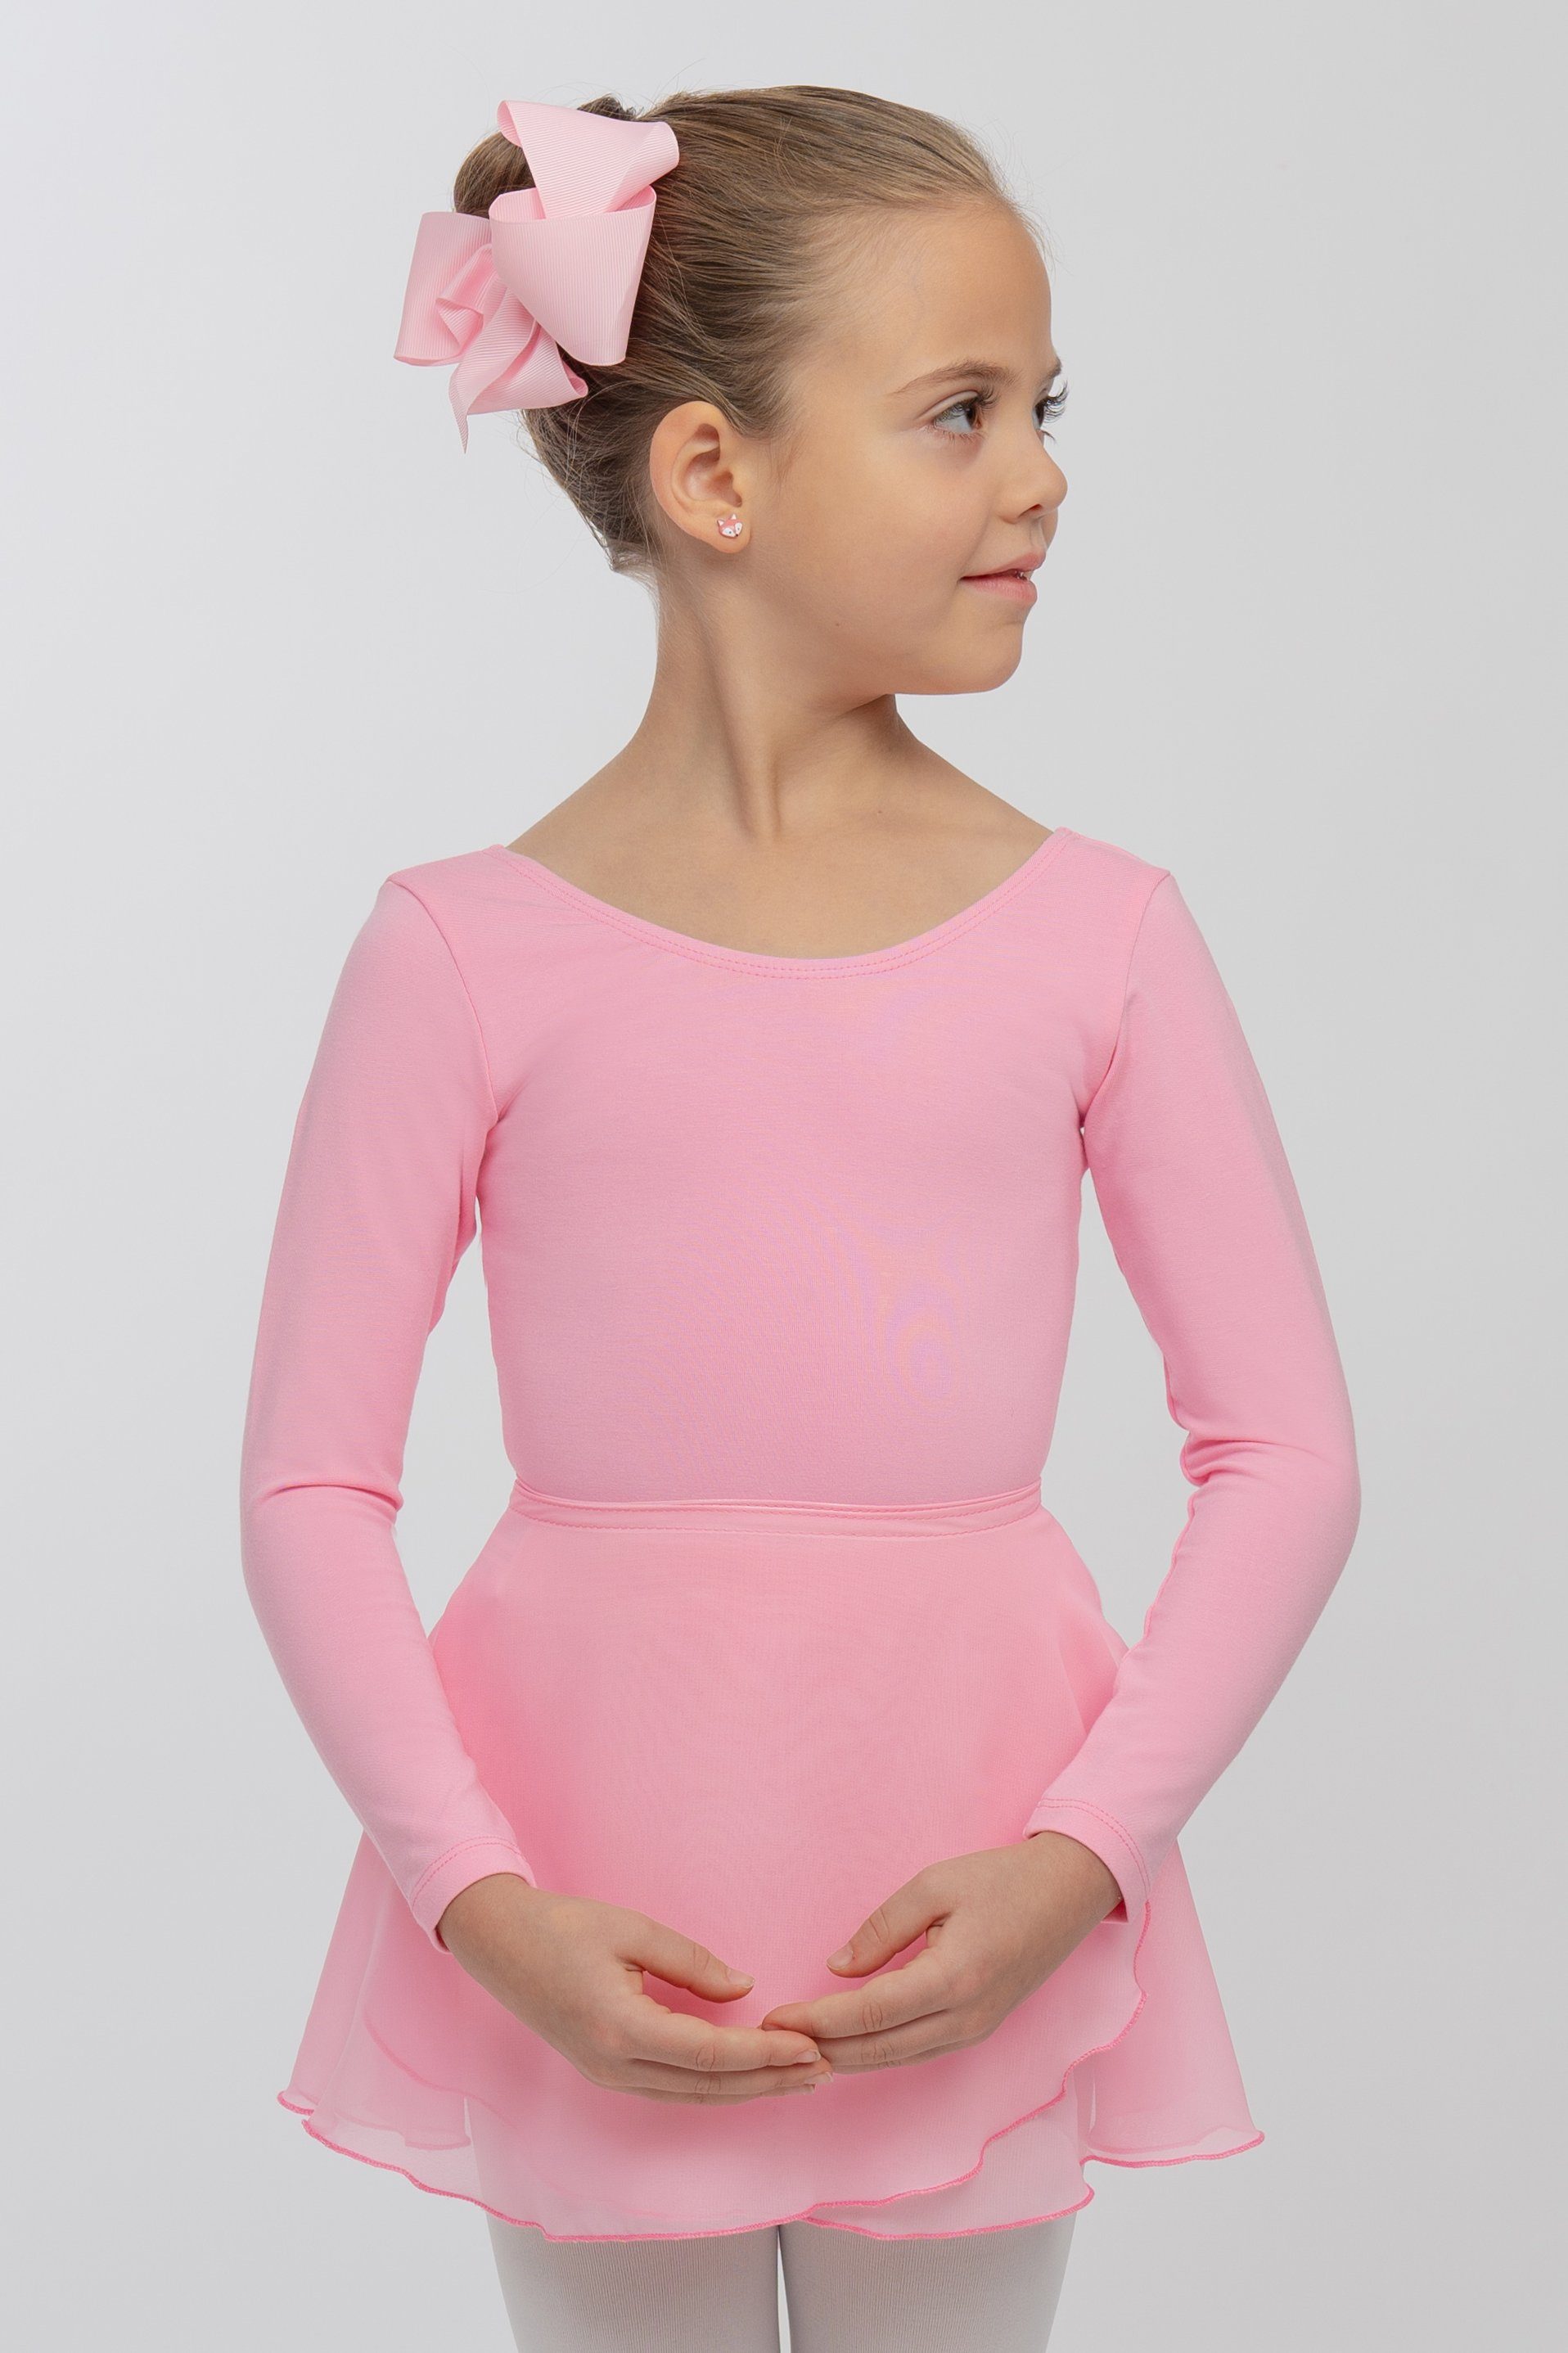 tanzmuster Wickelrock Ballettrock Emma zum Binden fürs Kinder Ballett rosa